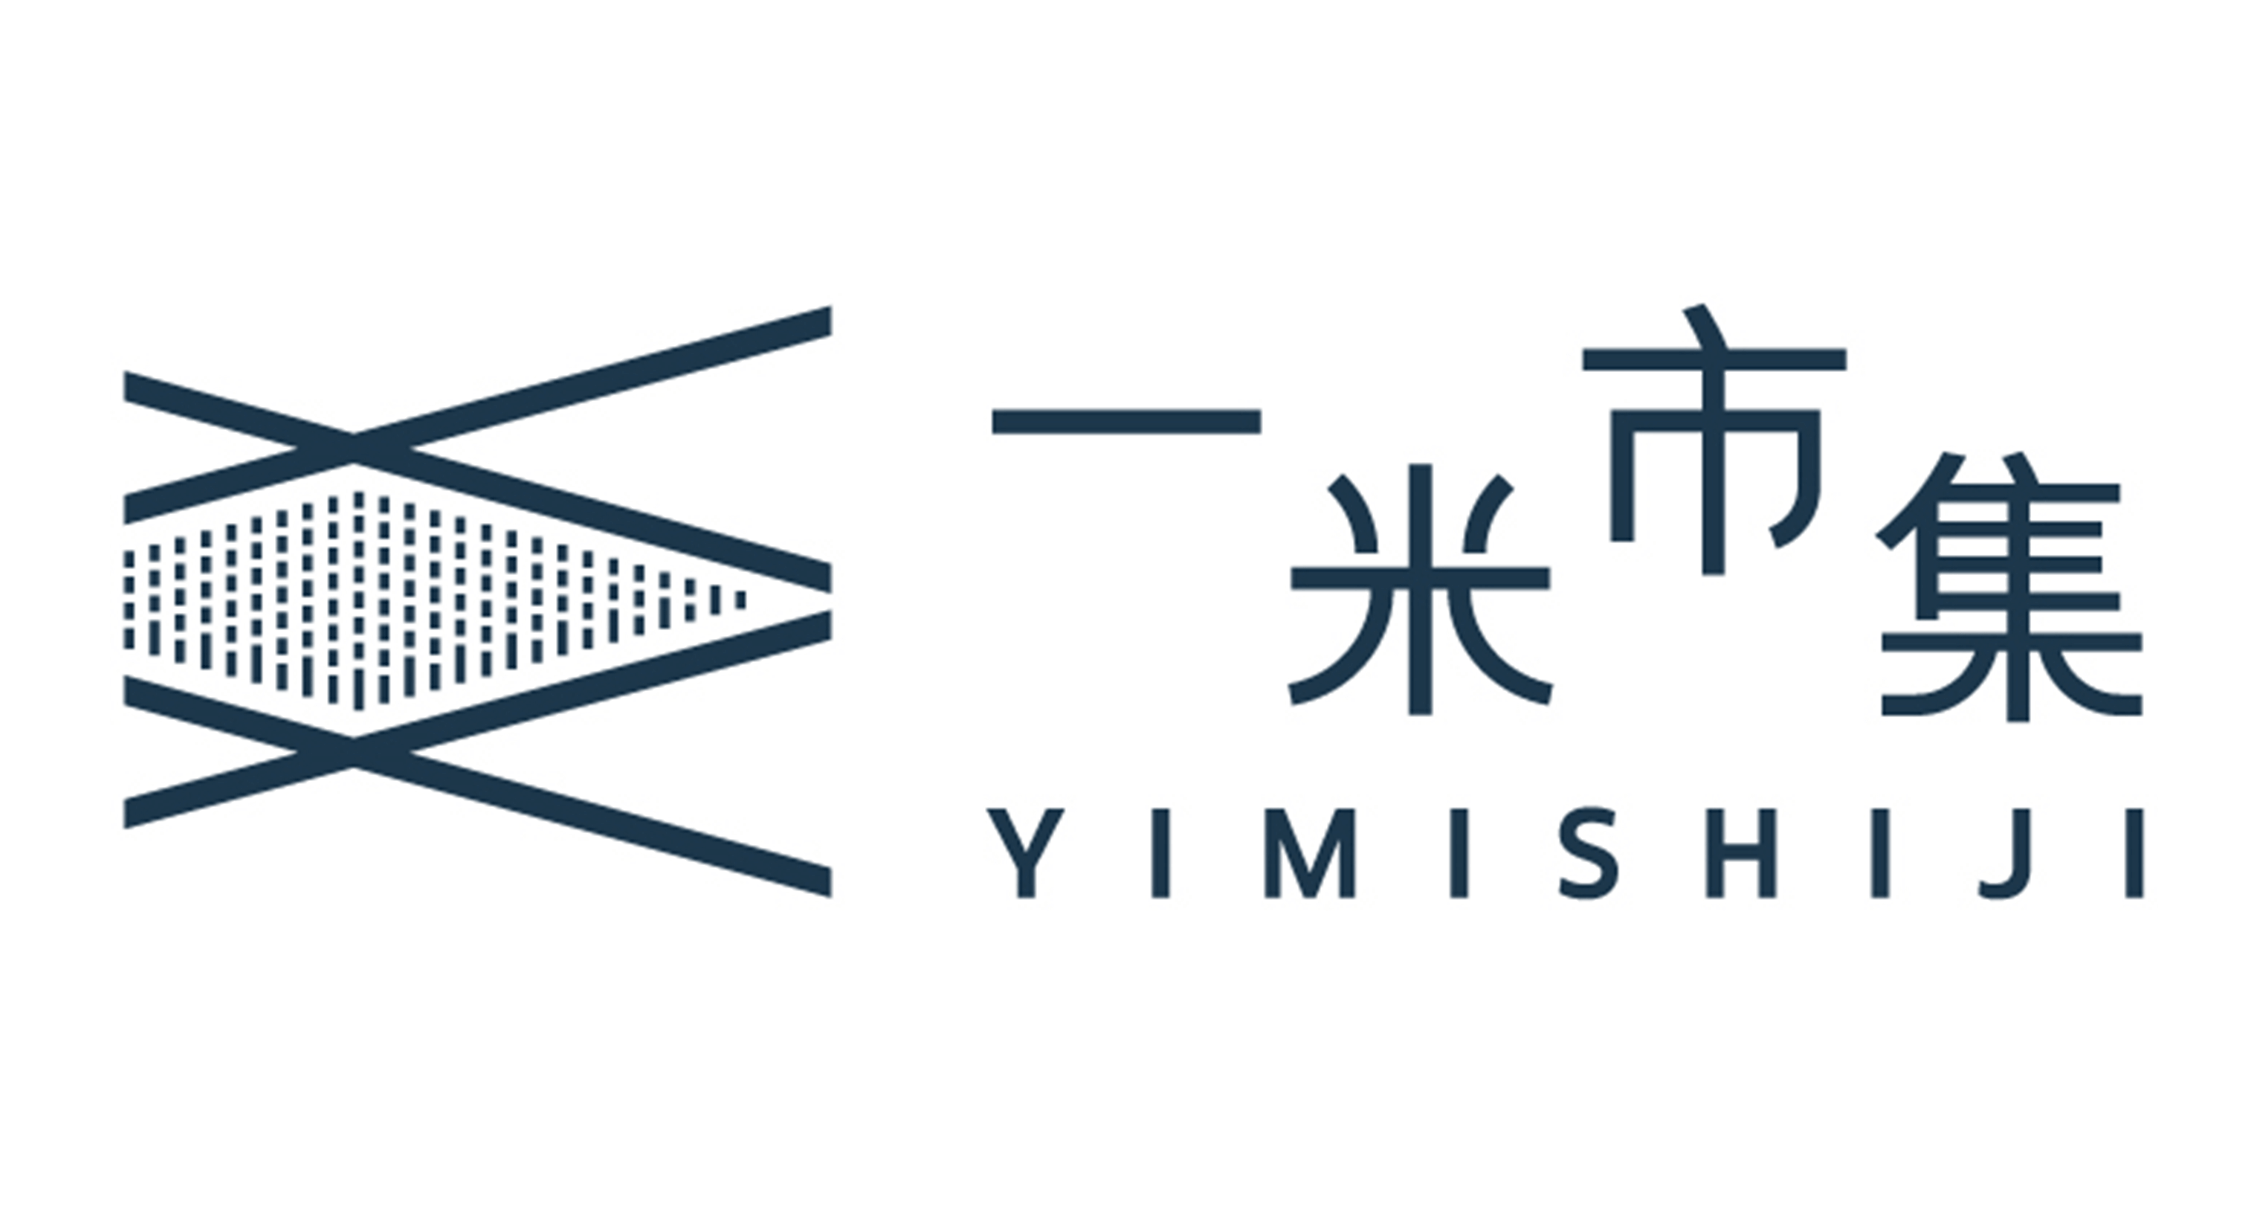 一米市集 Yimishiji